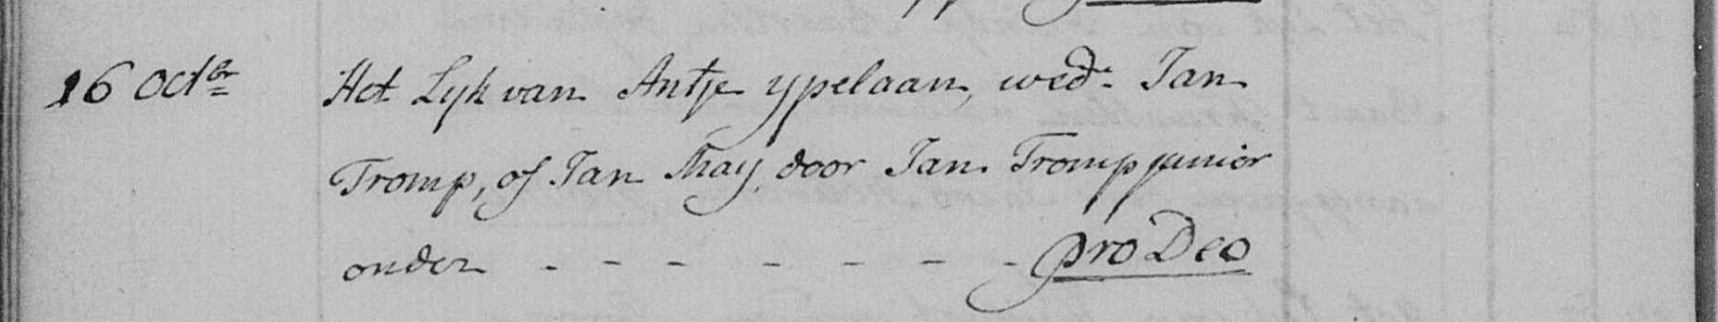 Begraafinschrijving Impost Antje IJpelaan, Castricum 1786